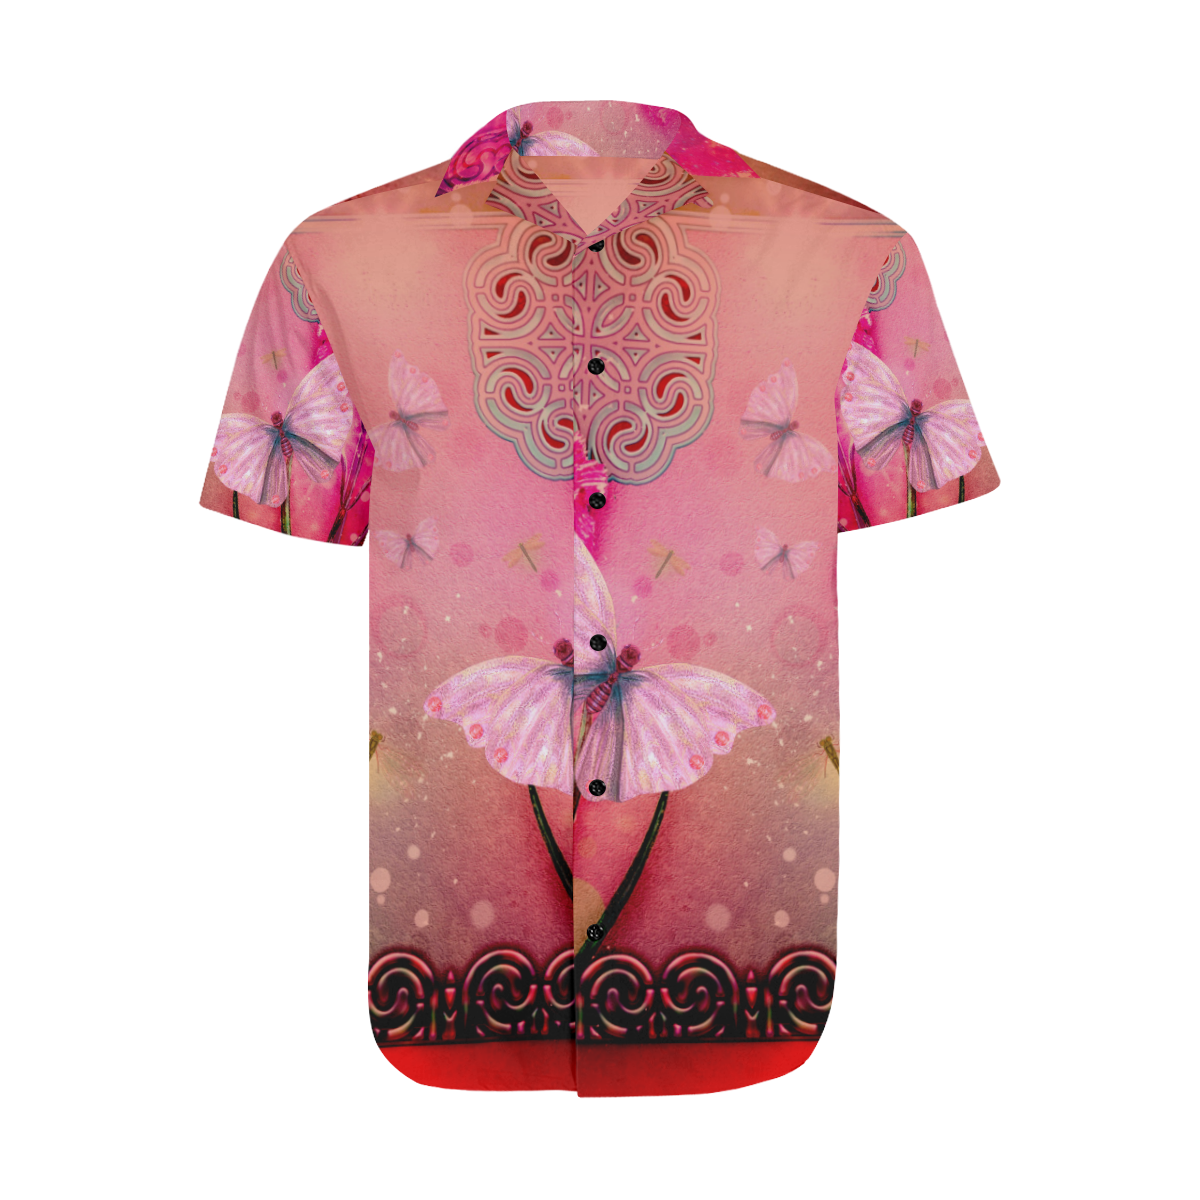 Wonderful butterflies Men's Short Sleeve Shirt with Lapel Collar (Model T54)